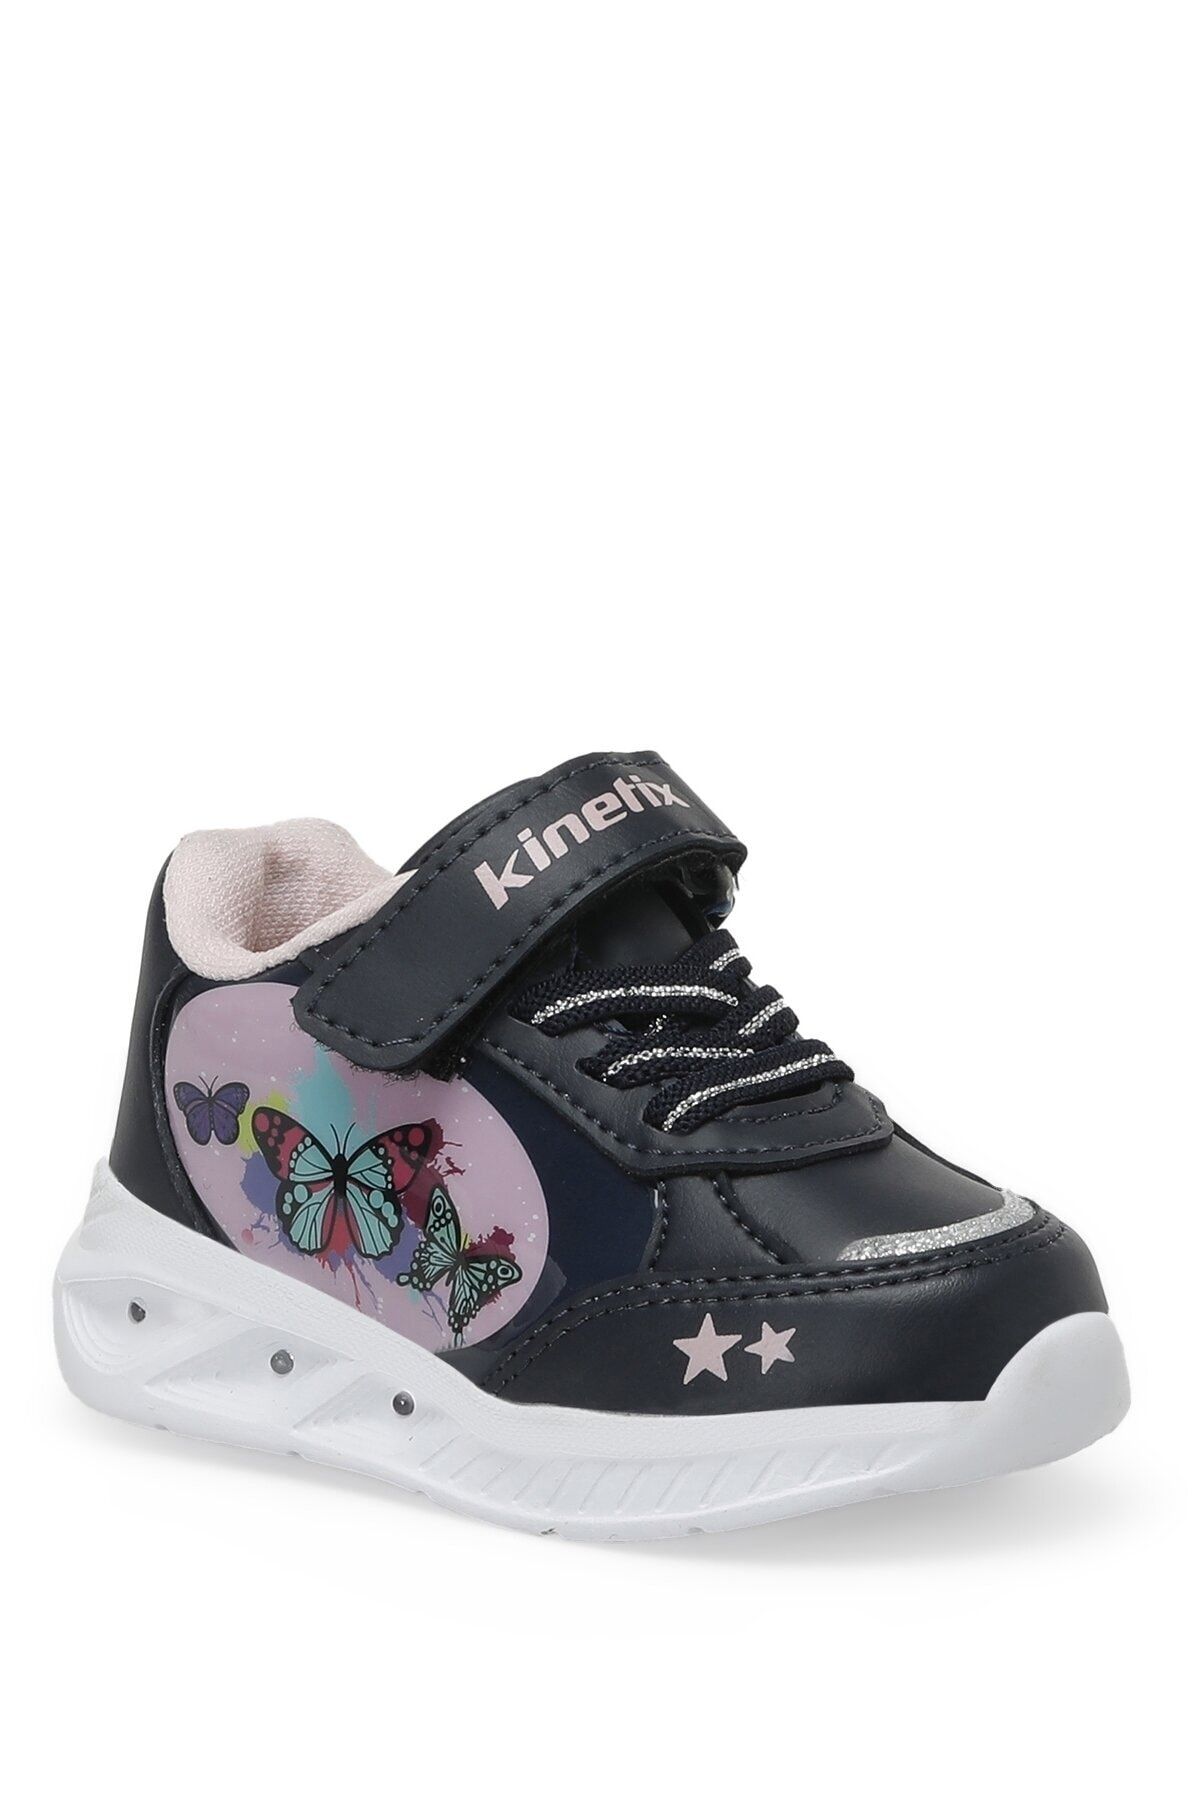 Kinetix Clıo 2pr Lacivert Kız Çocuk Yürüyüş Ayakkabısı